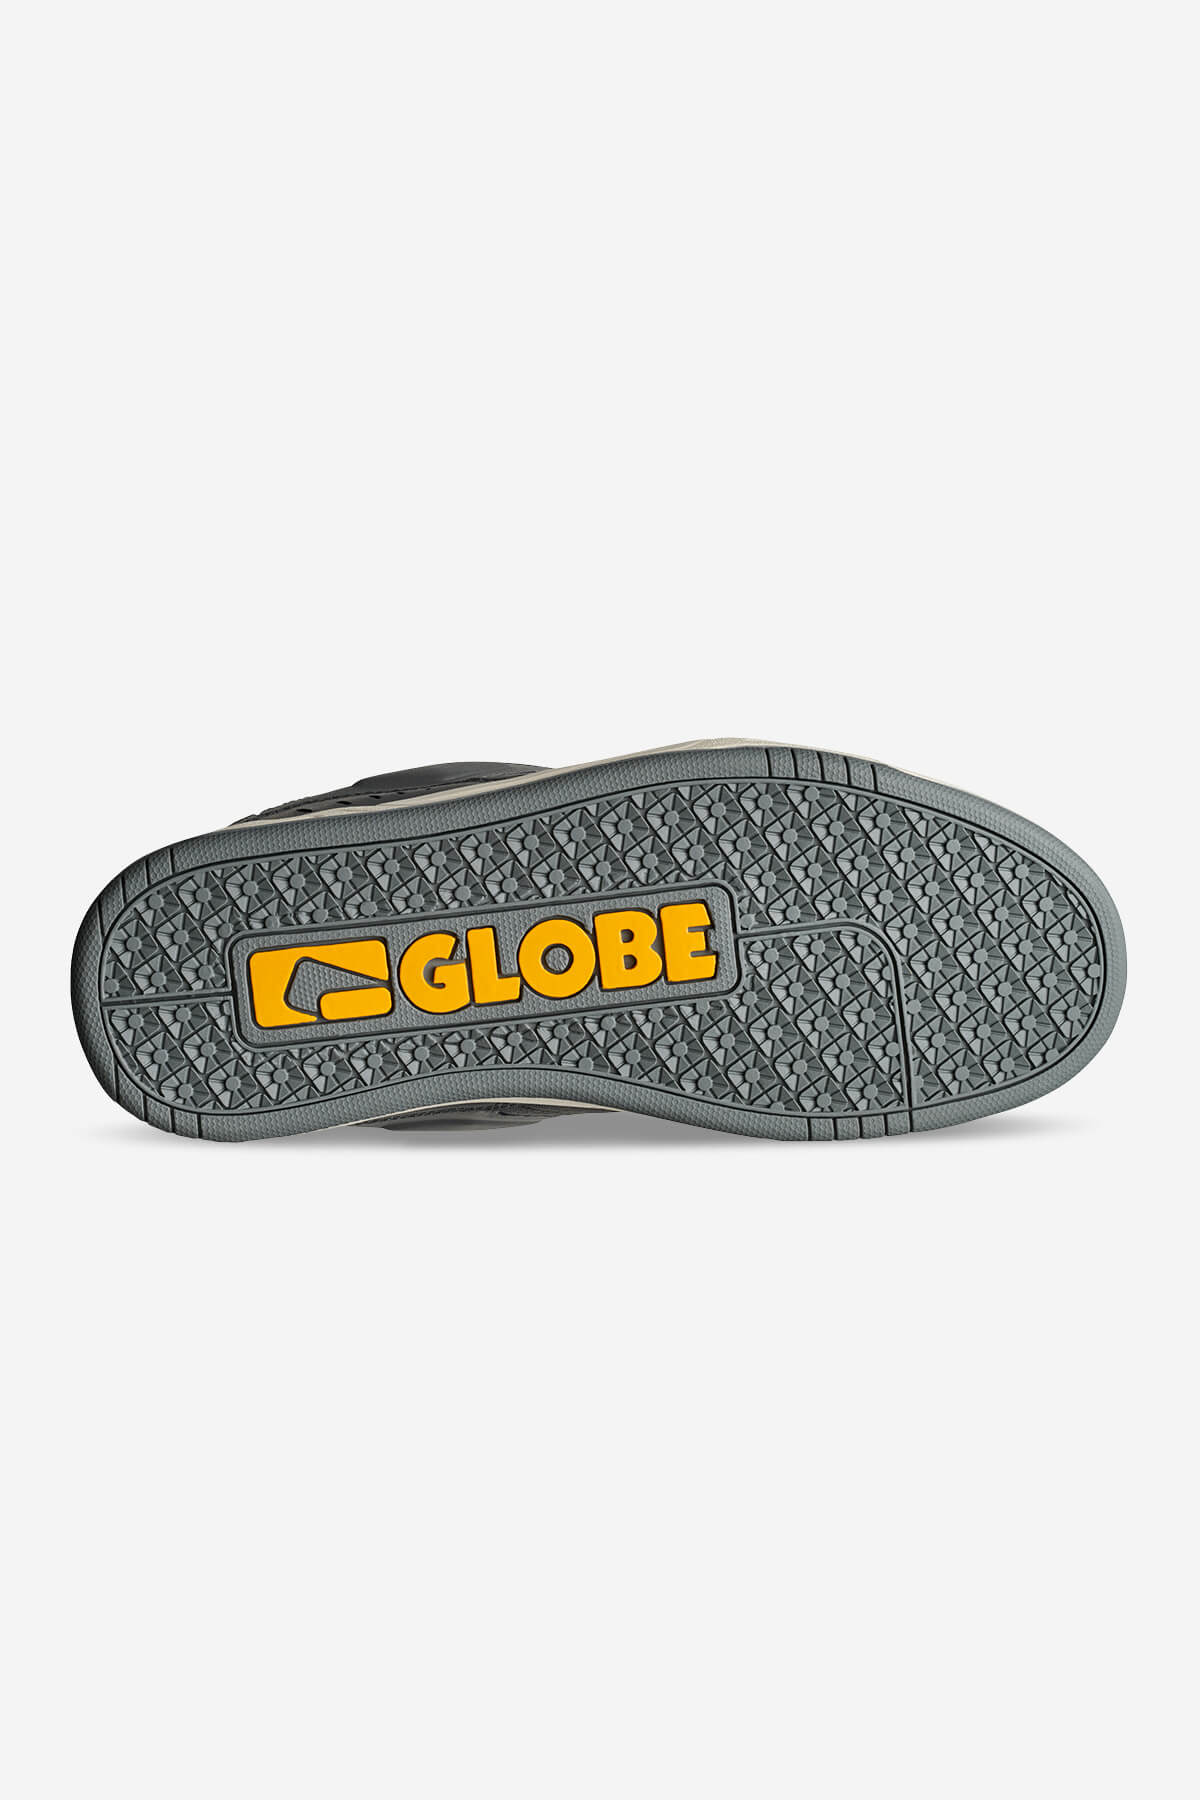 Globe - Fusion - Lood/Antiek - skateboard Schoenen